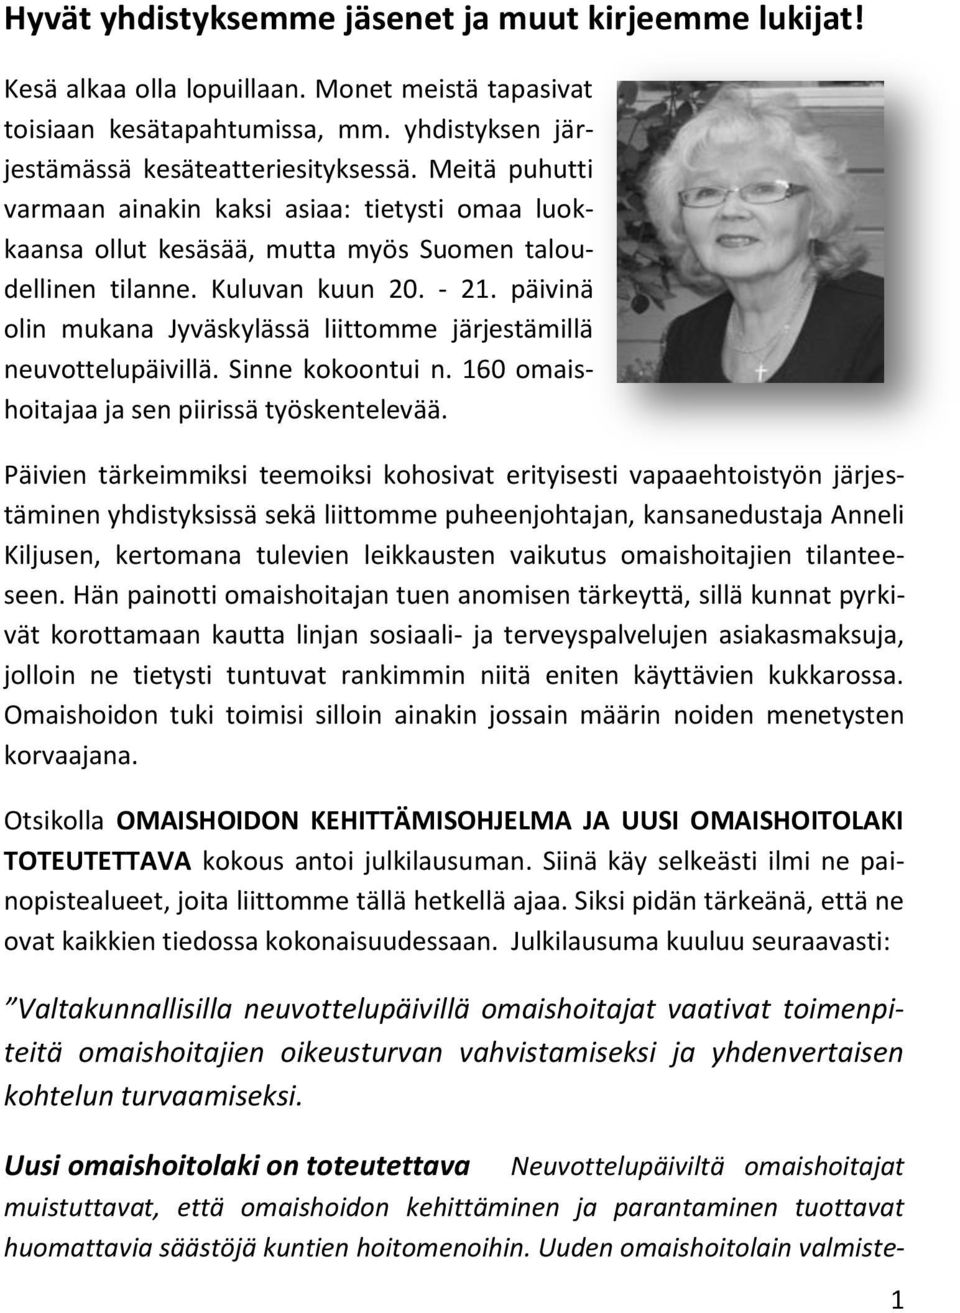 päivinä olin mukana Jyväskylässä liittomme järjestämillä neuvottelupäivillä. Sinne kokoontui n. 160 omaishoitajaa ja sen piirissä työskentelevää.